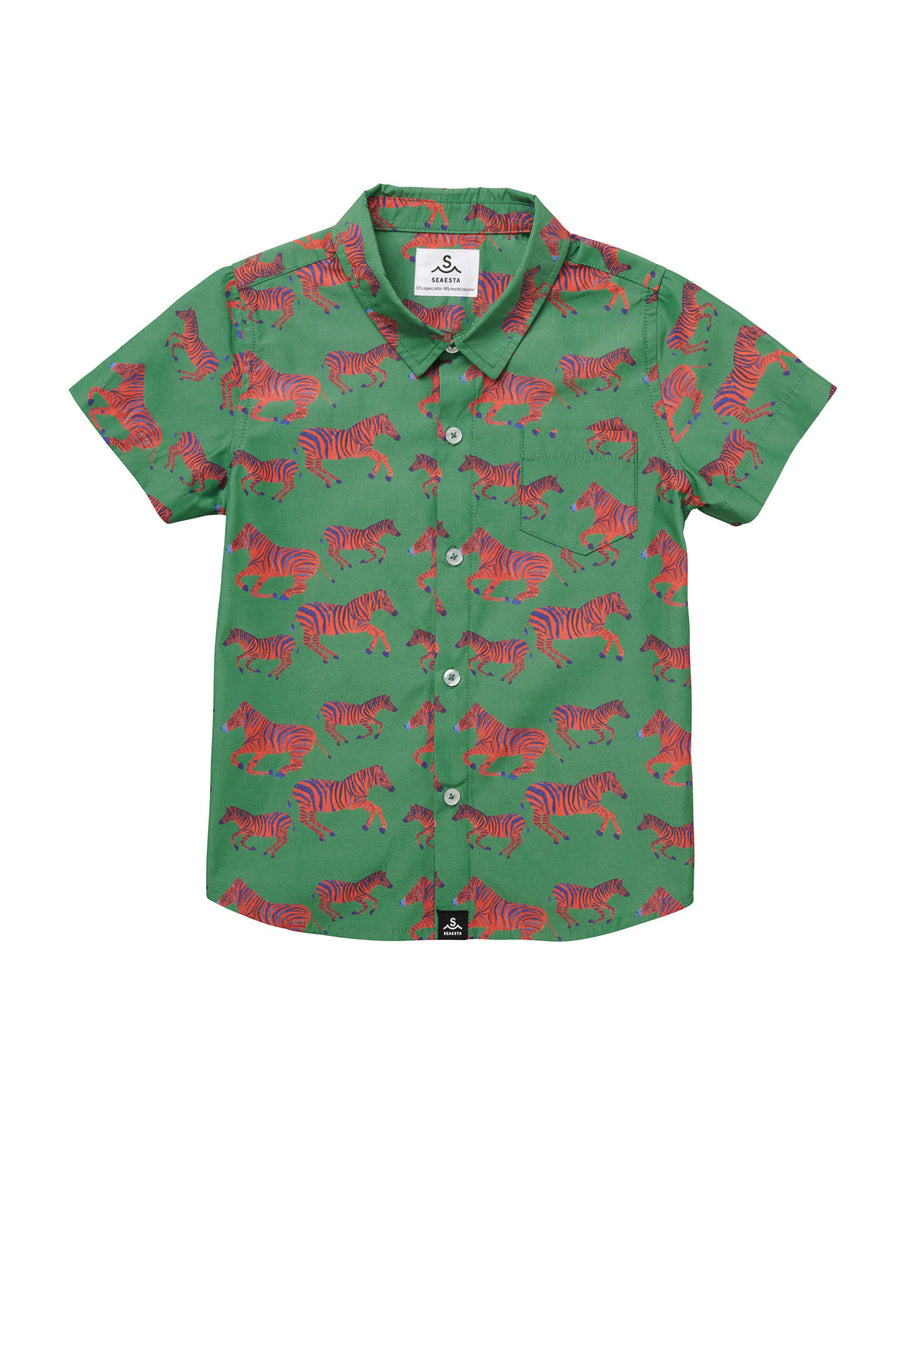 Zébre Button Up Shirt / KIDS / Emerald